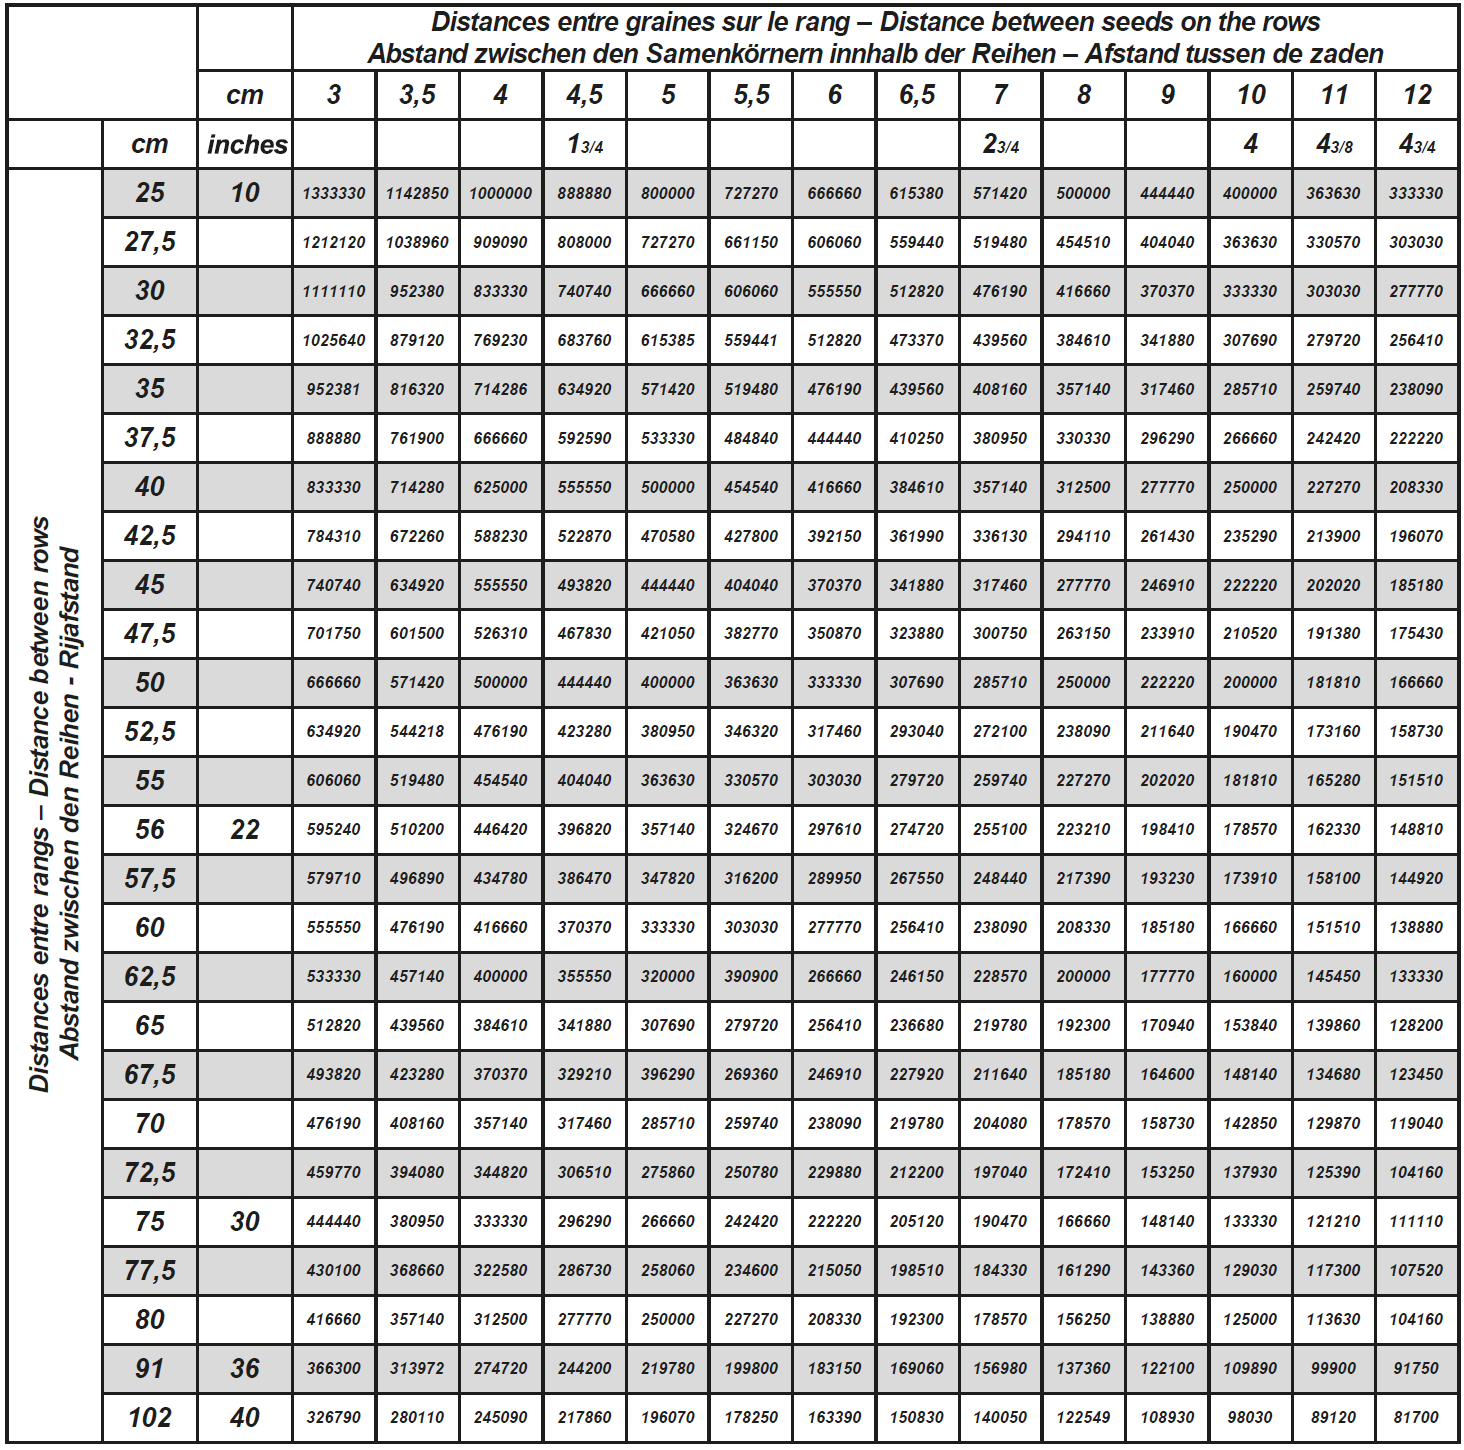 Poniżej: Tabela obsady wysiewu (obsady w ilościach ziaren na hektar) (Dane zostały podane dla 1 hektara, w celu uzyskania wyniku w akrach należy wartość podzielić przez 2,47) - patrz również kolejna